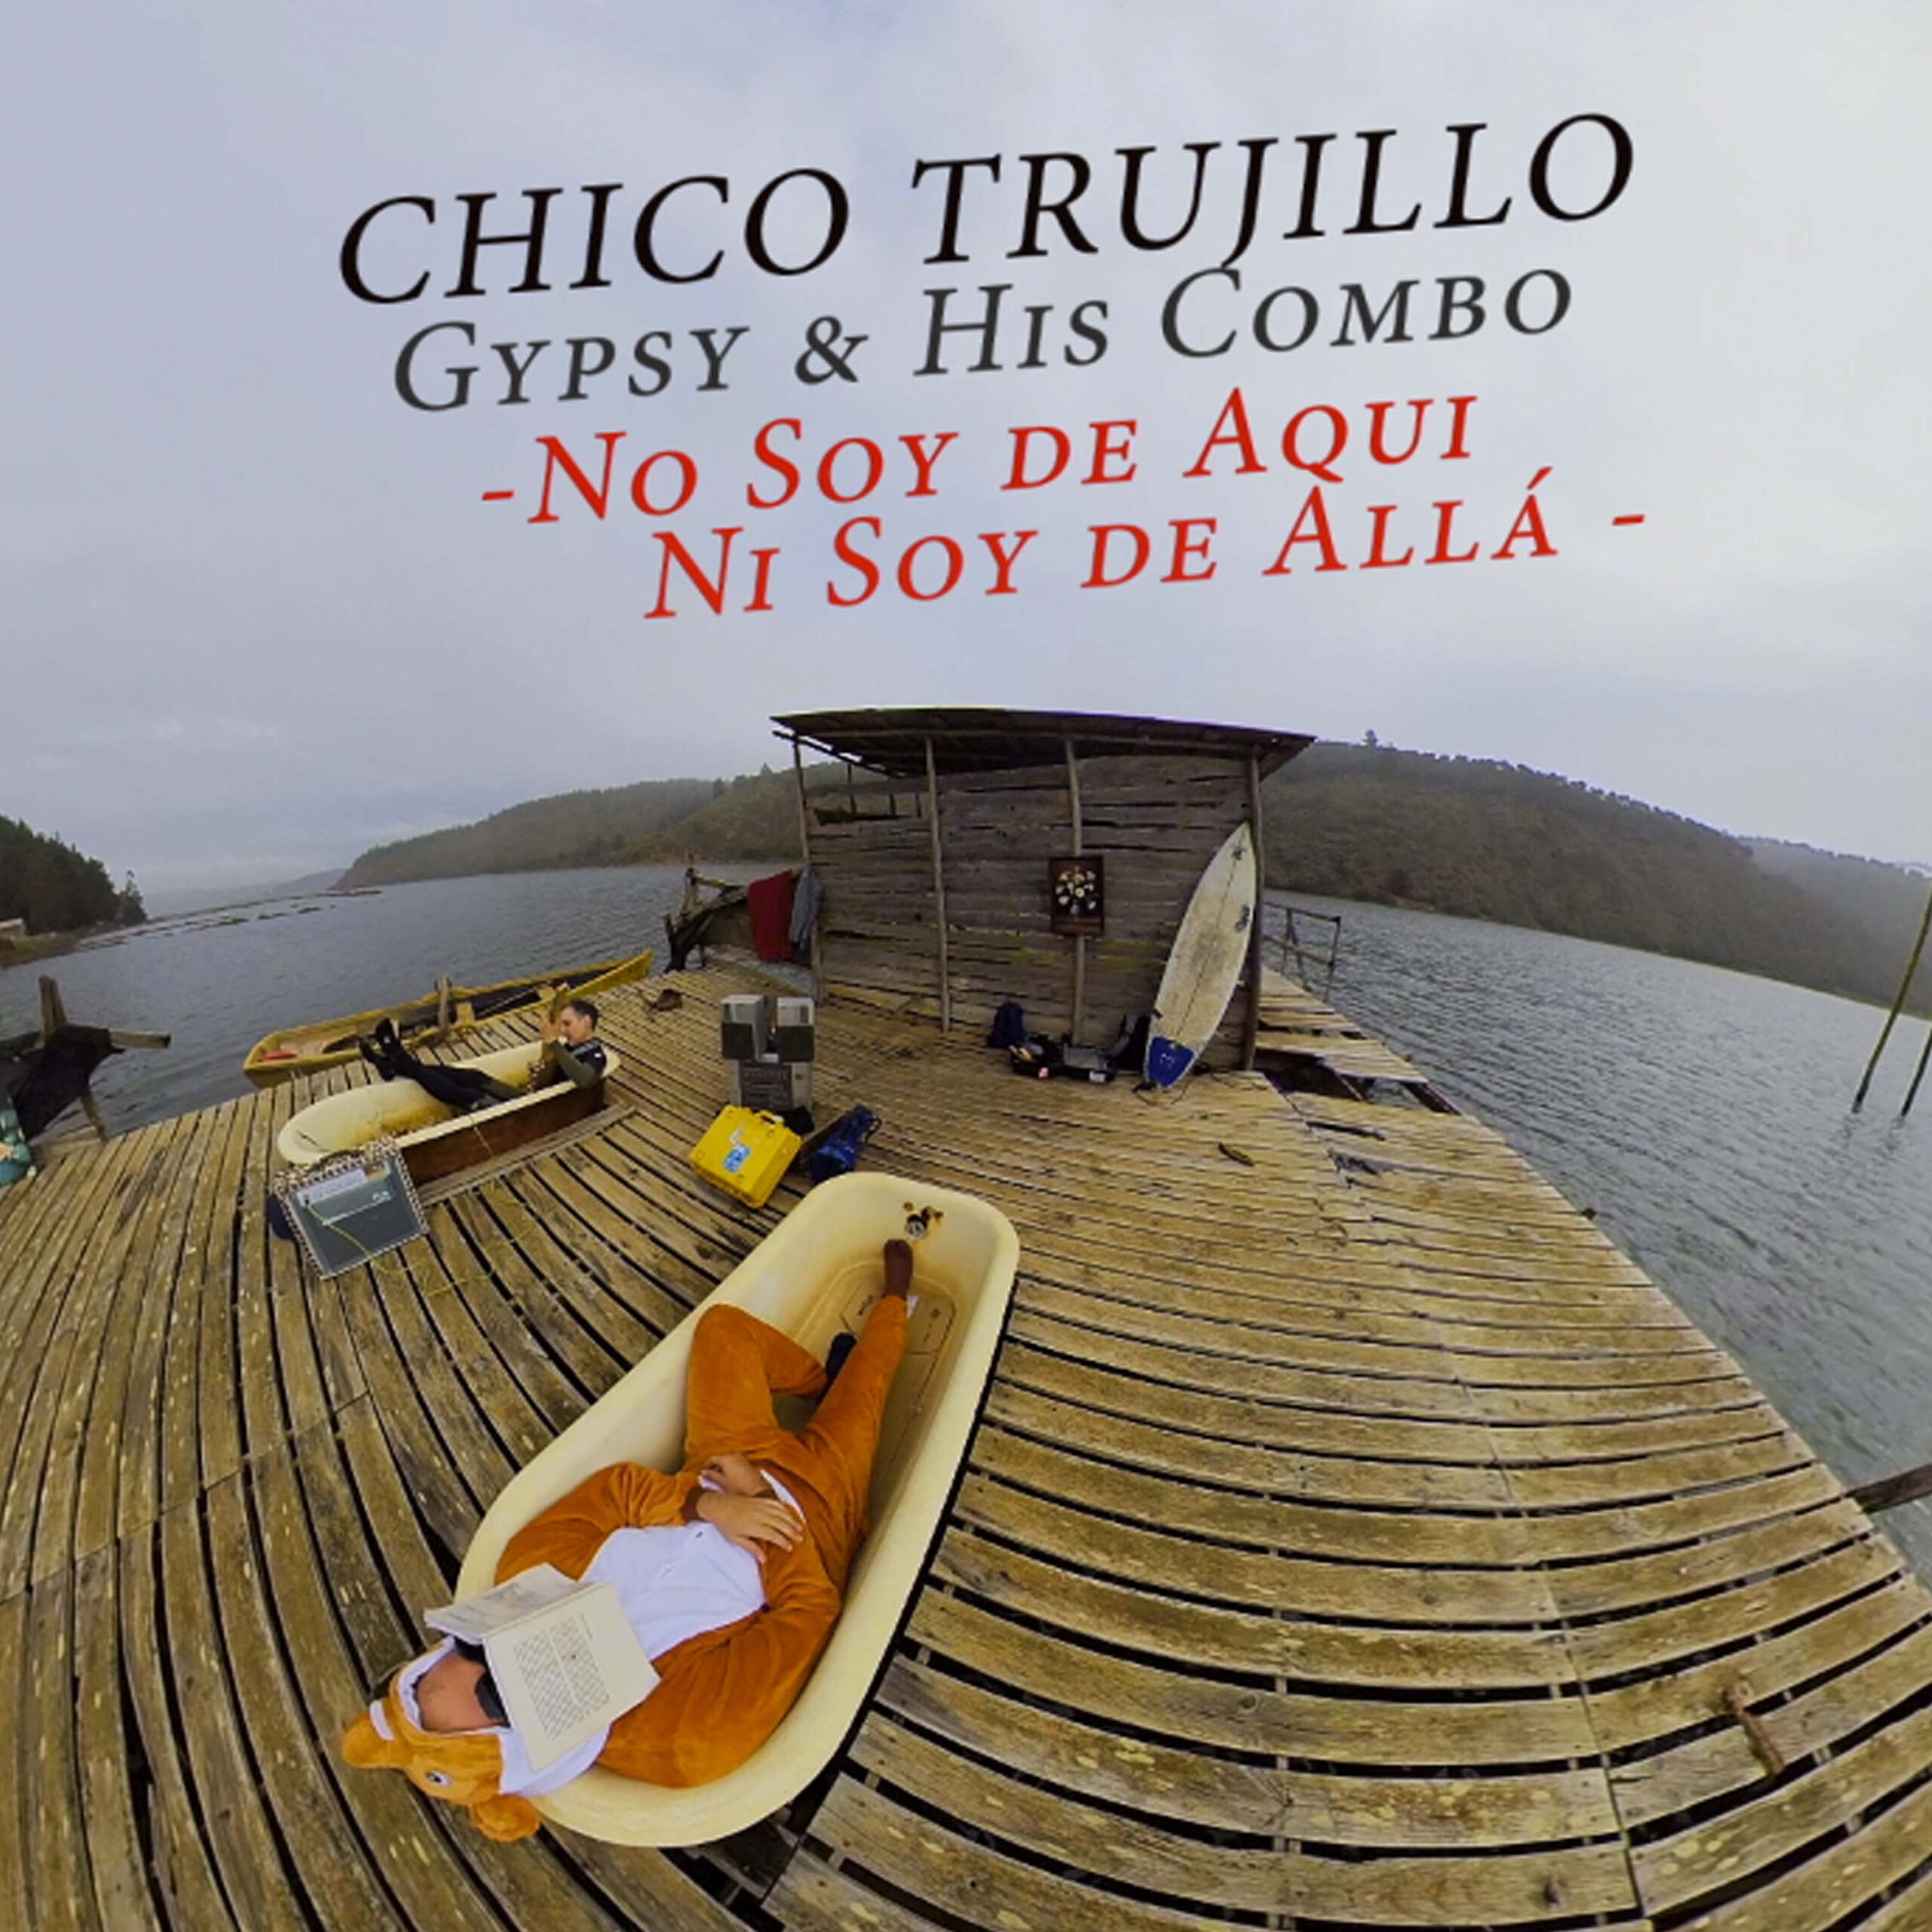 Chico Trujillo estrena versión en México de “No soy de aquí, ni soy de allá”